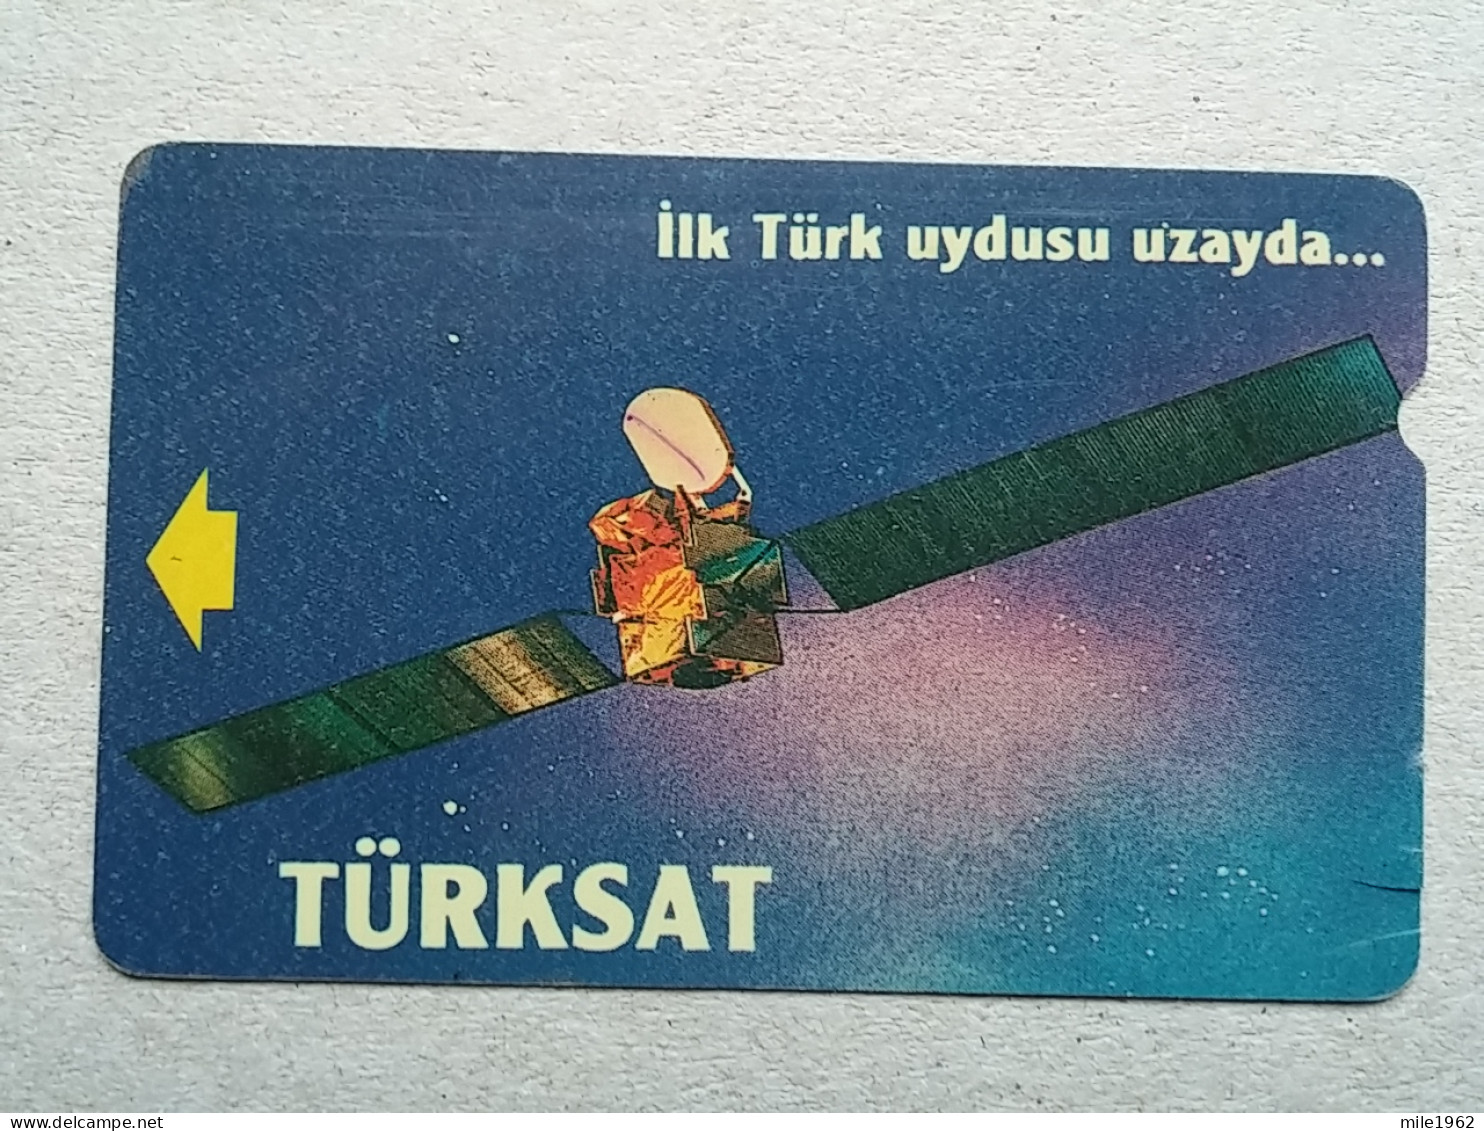 T-597 - TURKEY, Telecard, Télécarte, Phonecard - Turchia